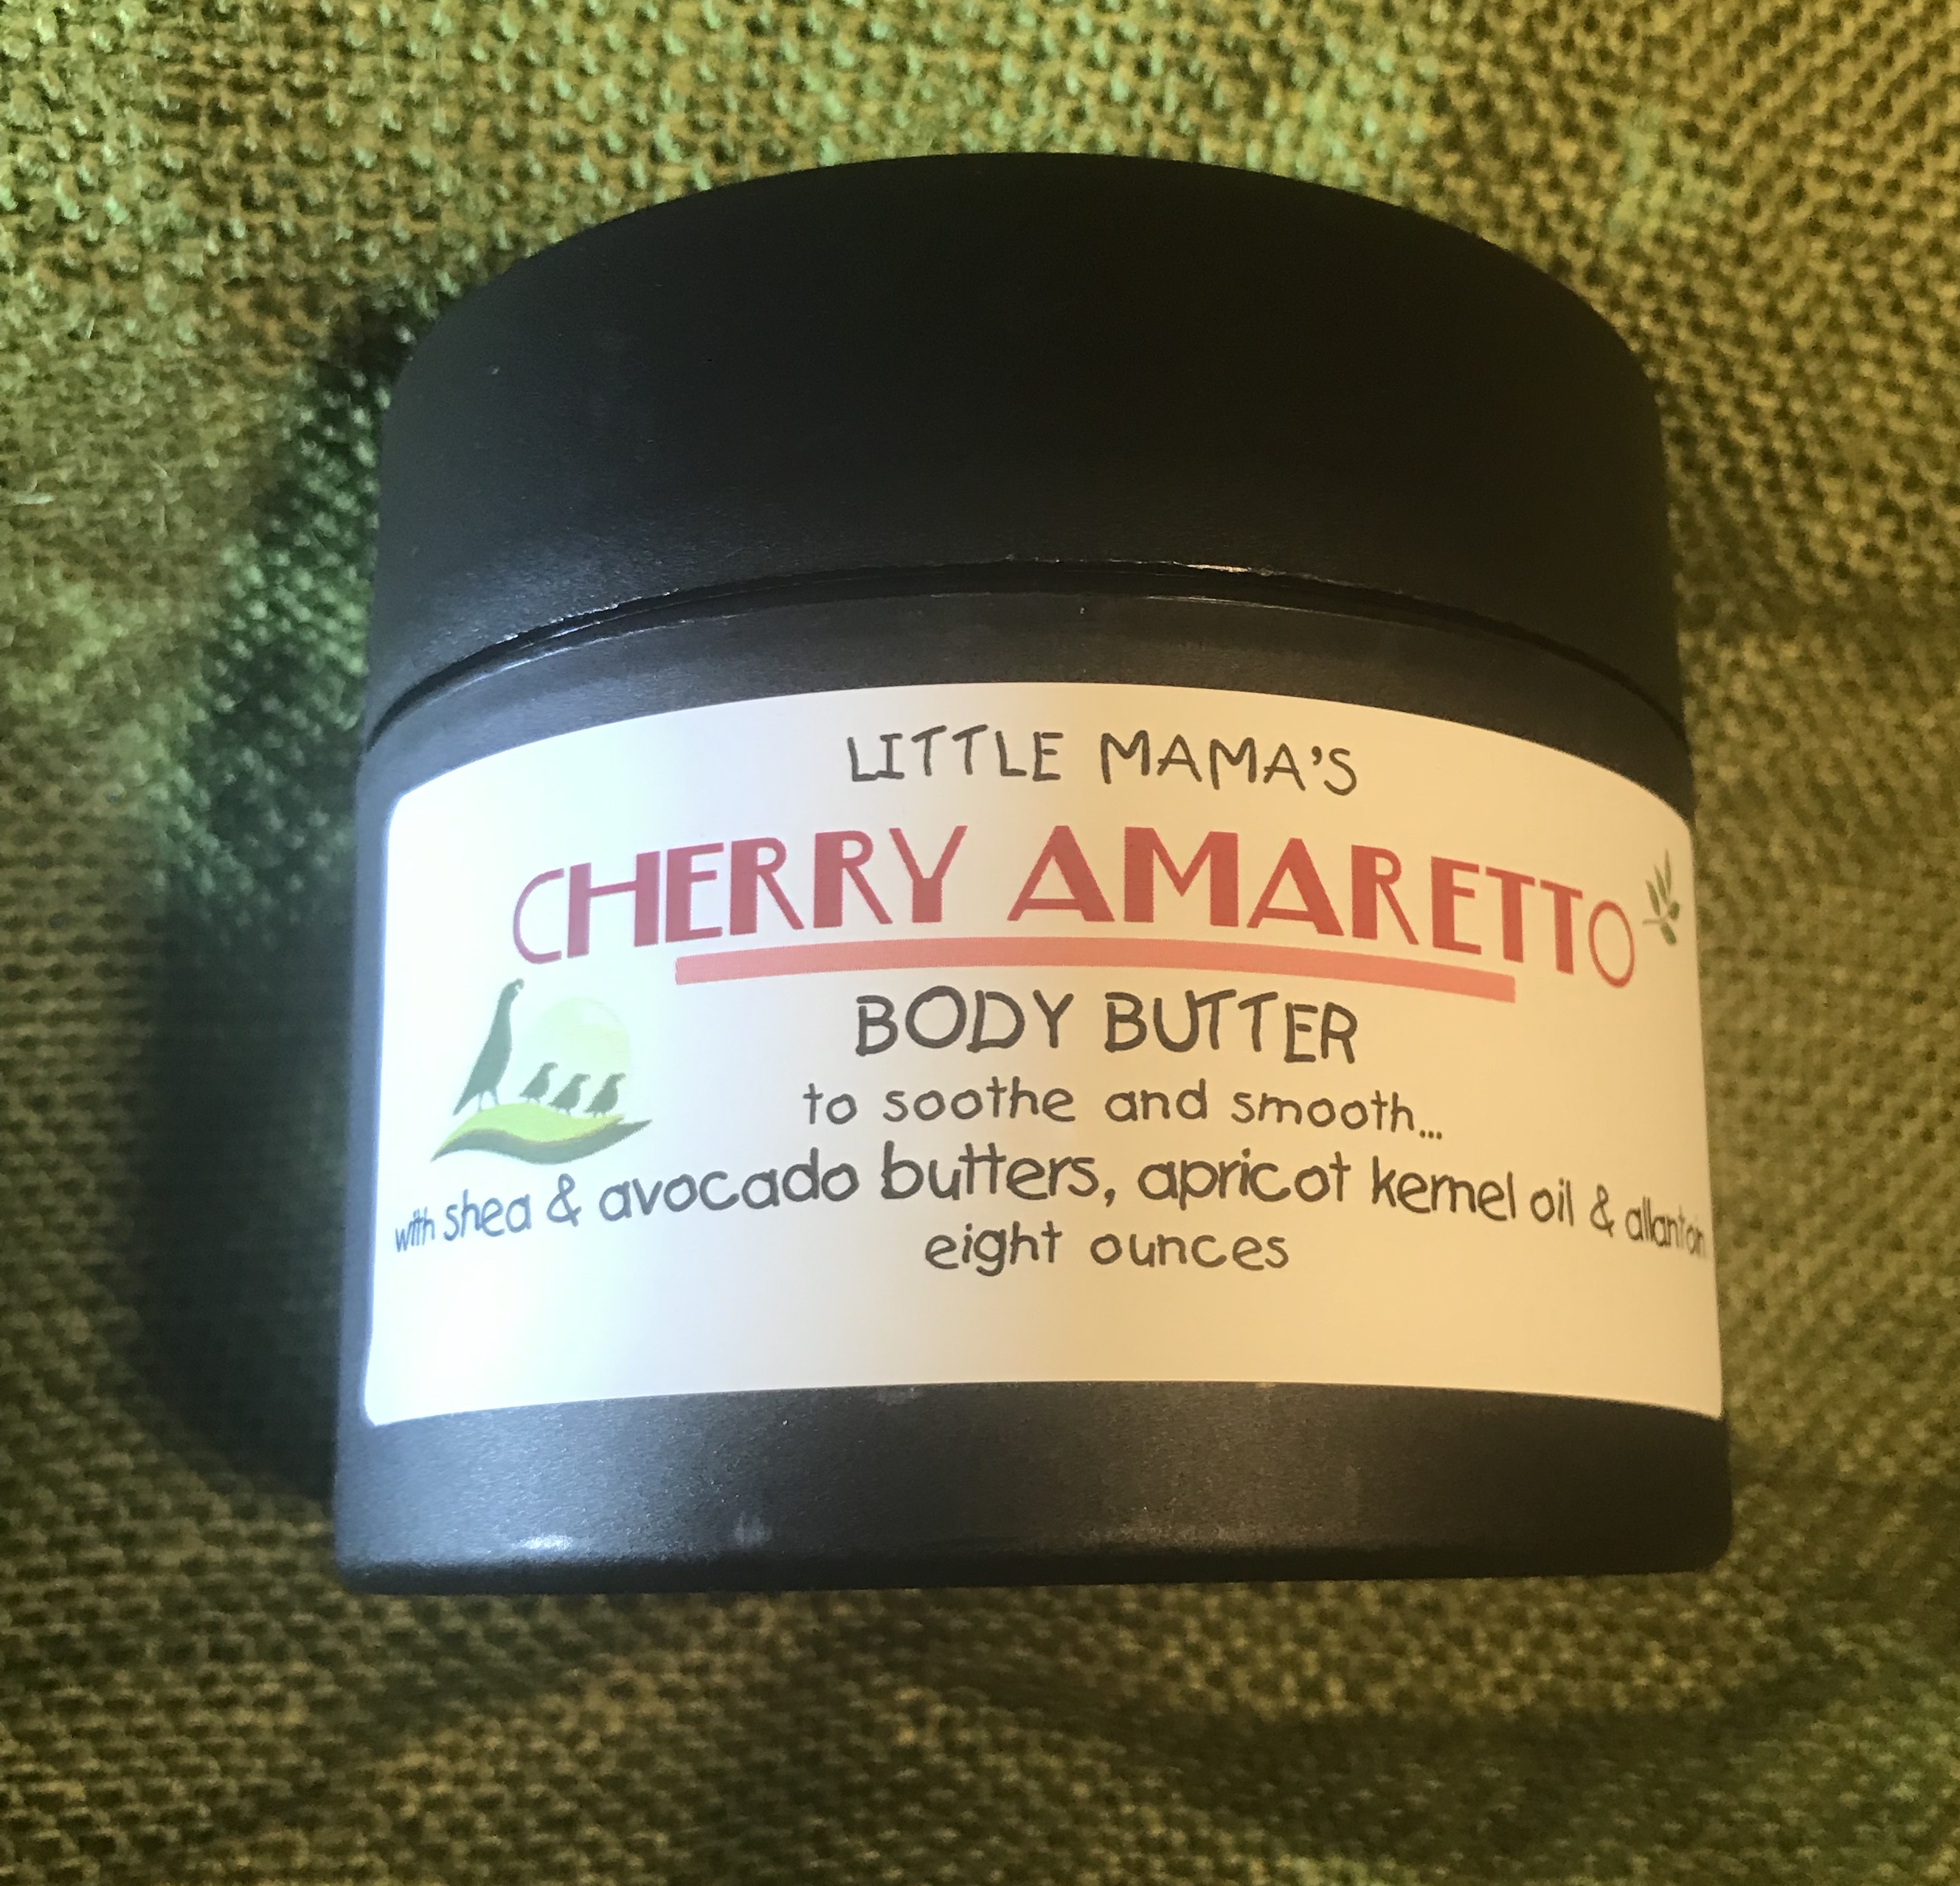 Cherry Amaretto Body Butter